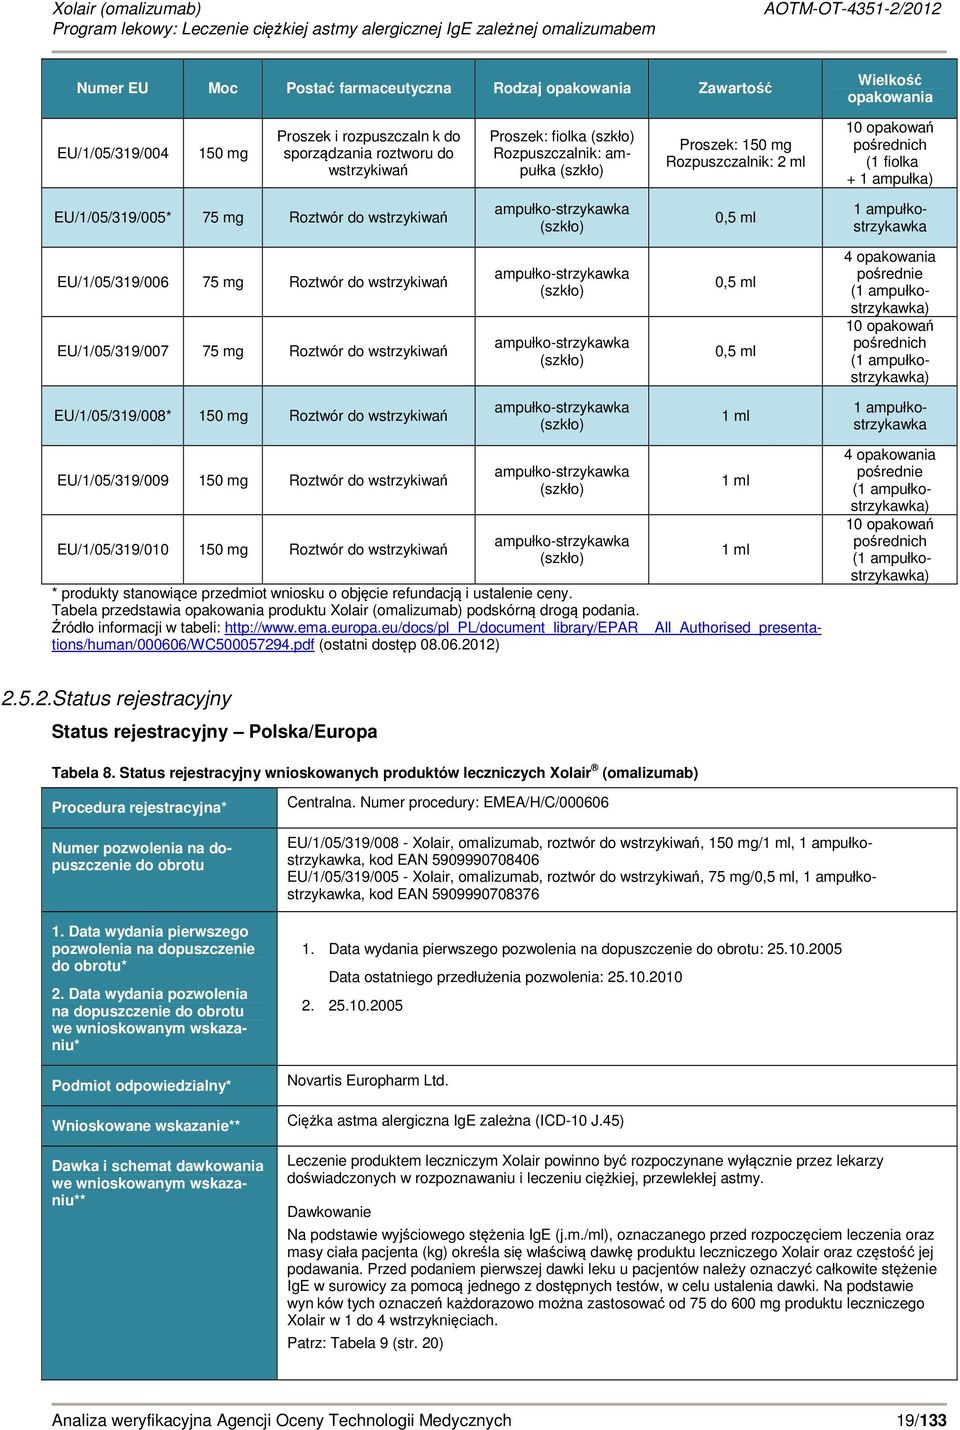 ampukostrzykawka EU/1/05/319/006 75 mg Roztwór do wstrzykiwań EU/1/05/319/007 75 mg Roztwór do wstrzykiwań ampuko-strzykawka (szko) ampuko-strzykawka (szko) 0,5 ml 0,5 ml 4 opakowania pośrednie (1